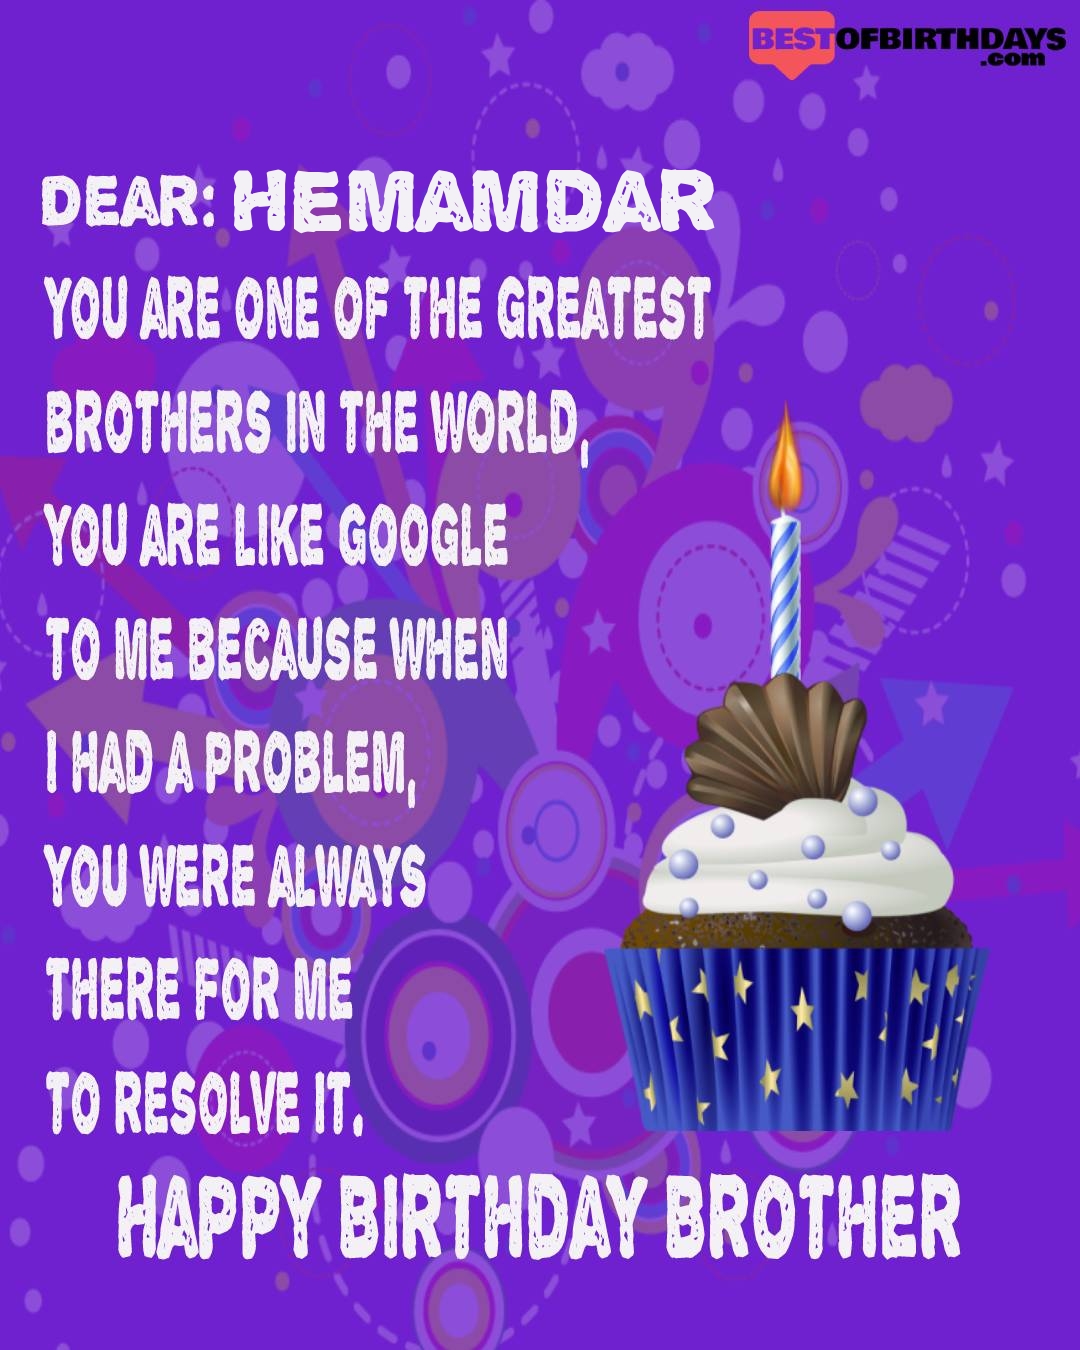 Happy birthday hemamdar bhai brother bro